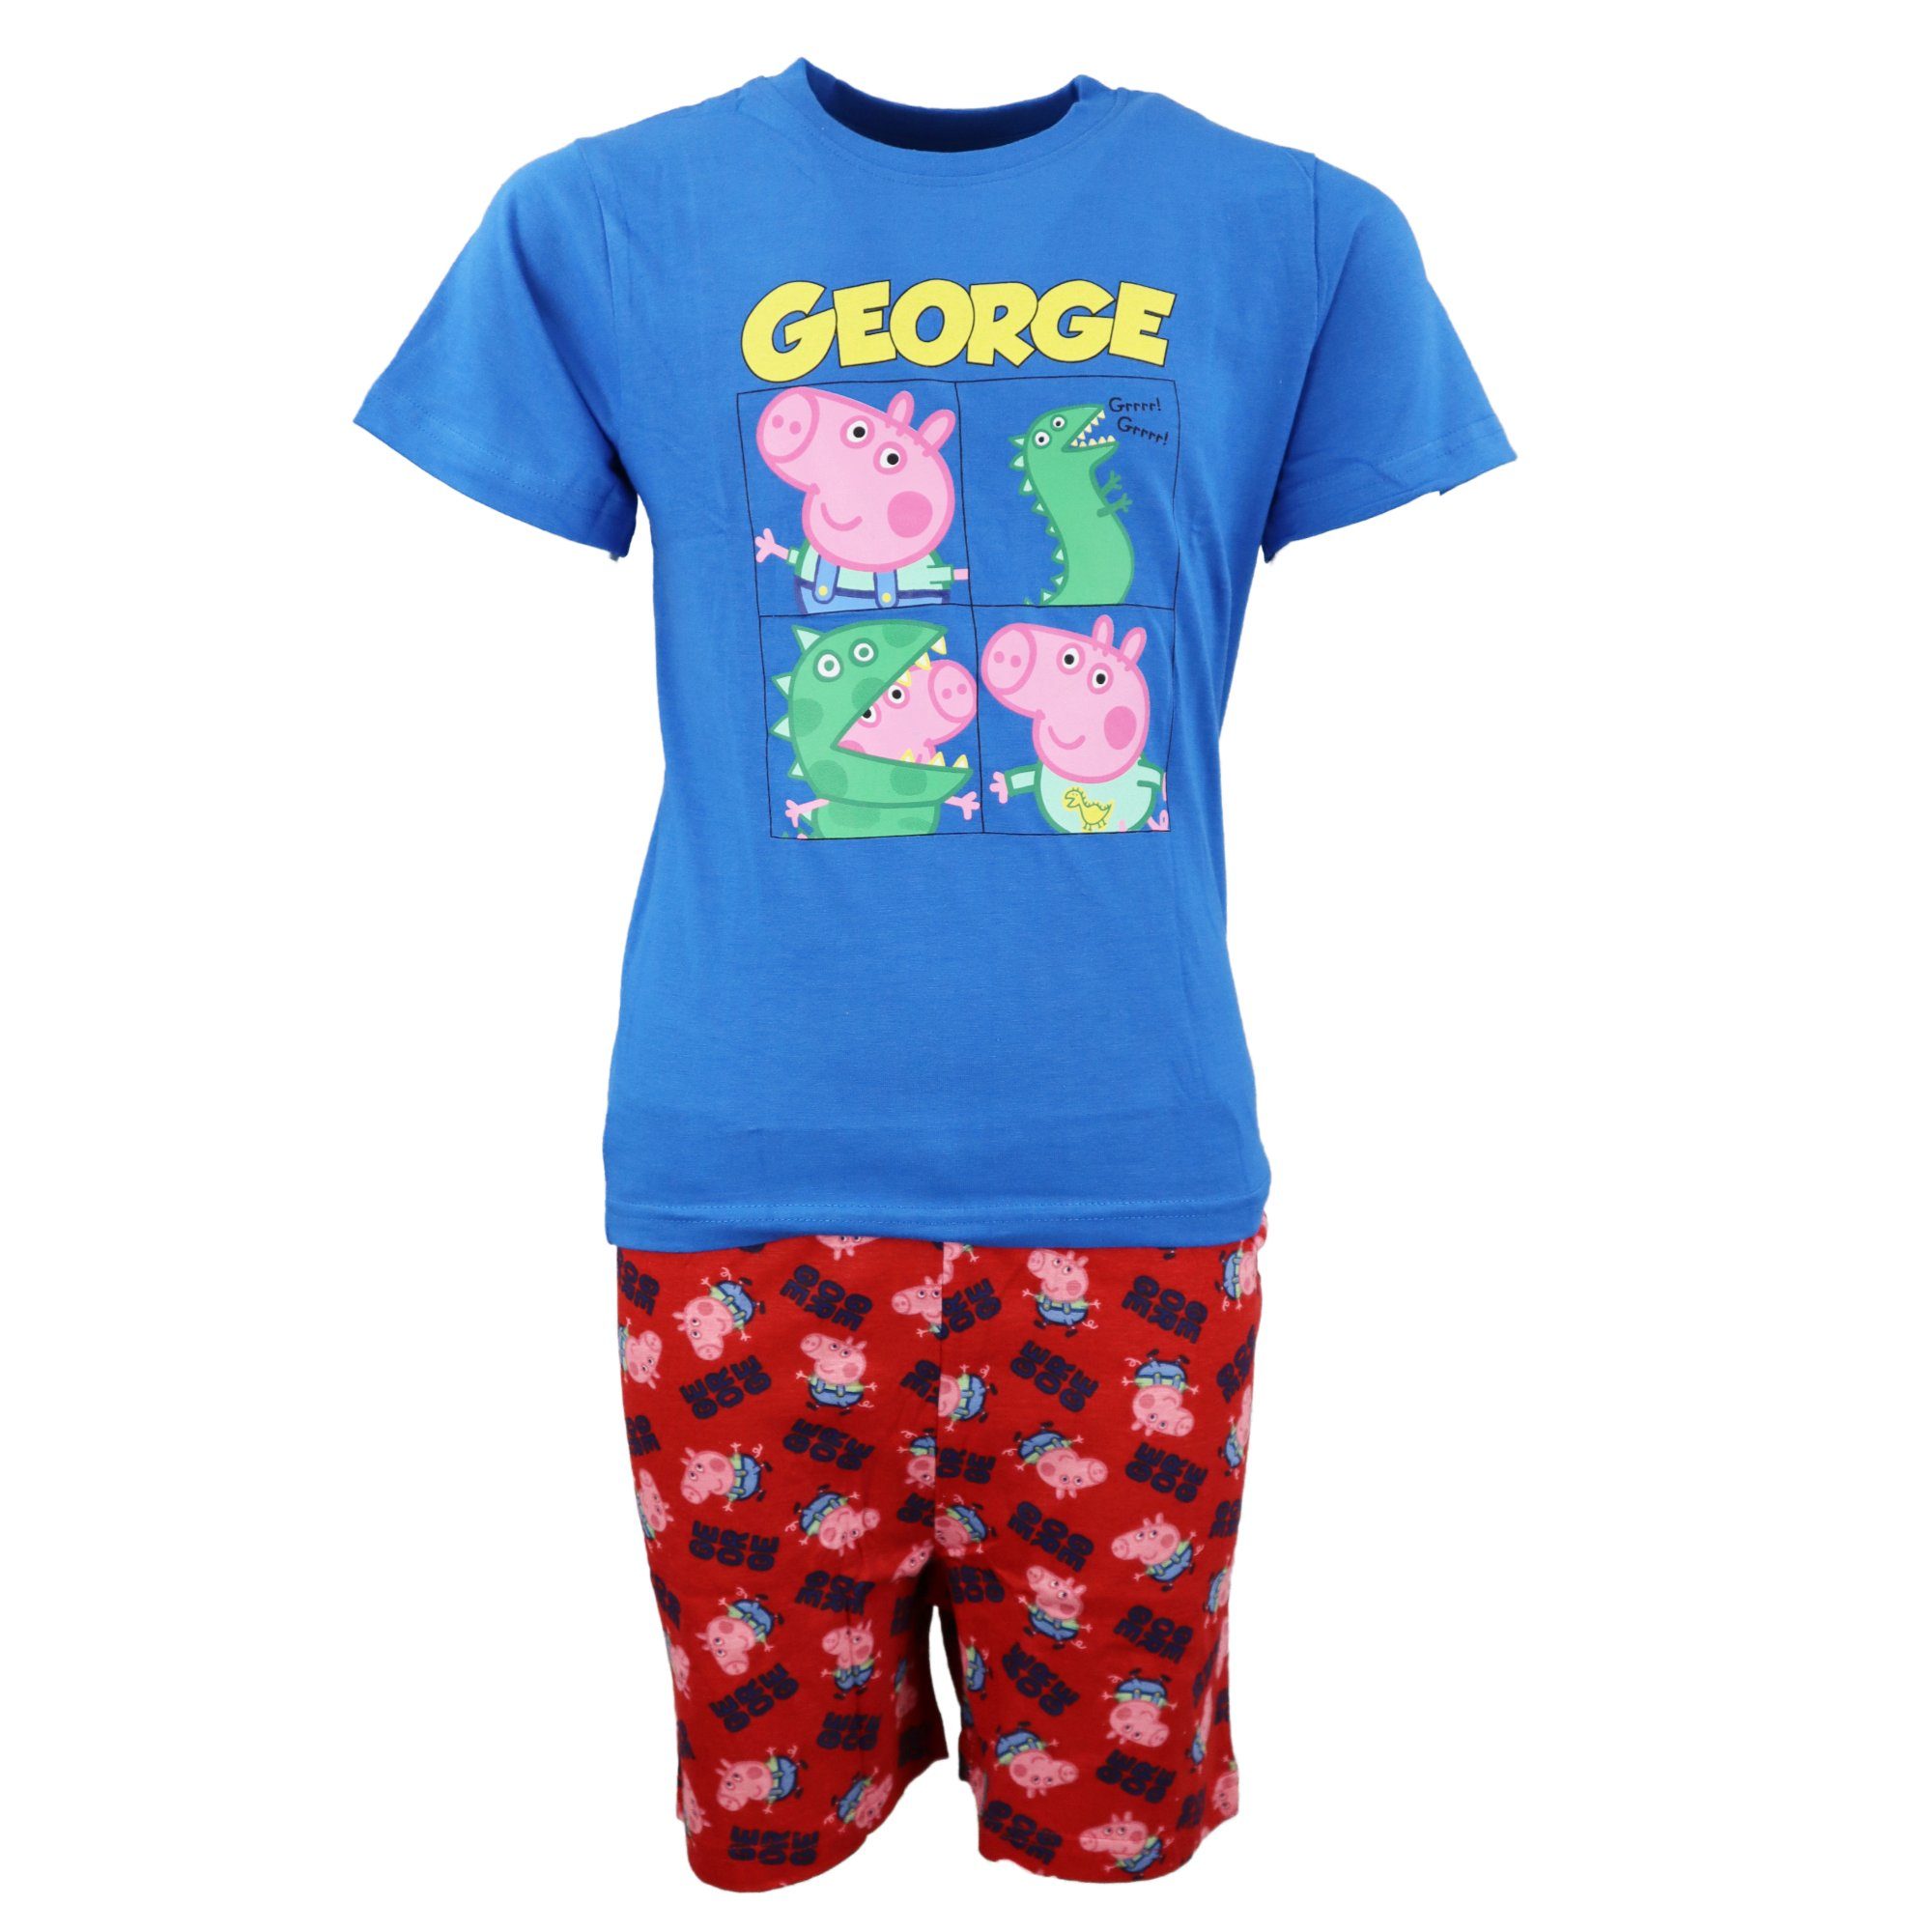 Peppa Pig Pyjama Peppa Wutz Pig George Kinder Jungen Schlafanzug Gr. 104 bis 134 Blau